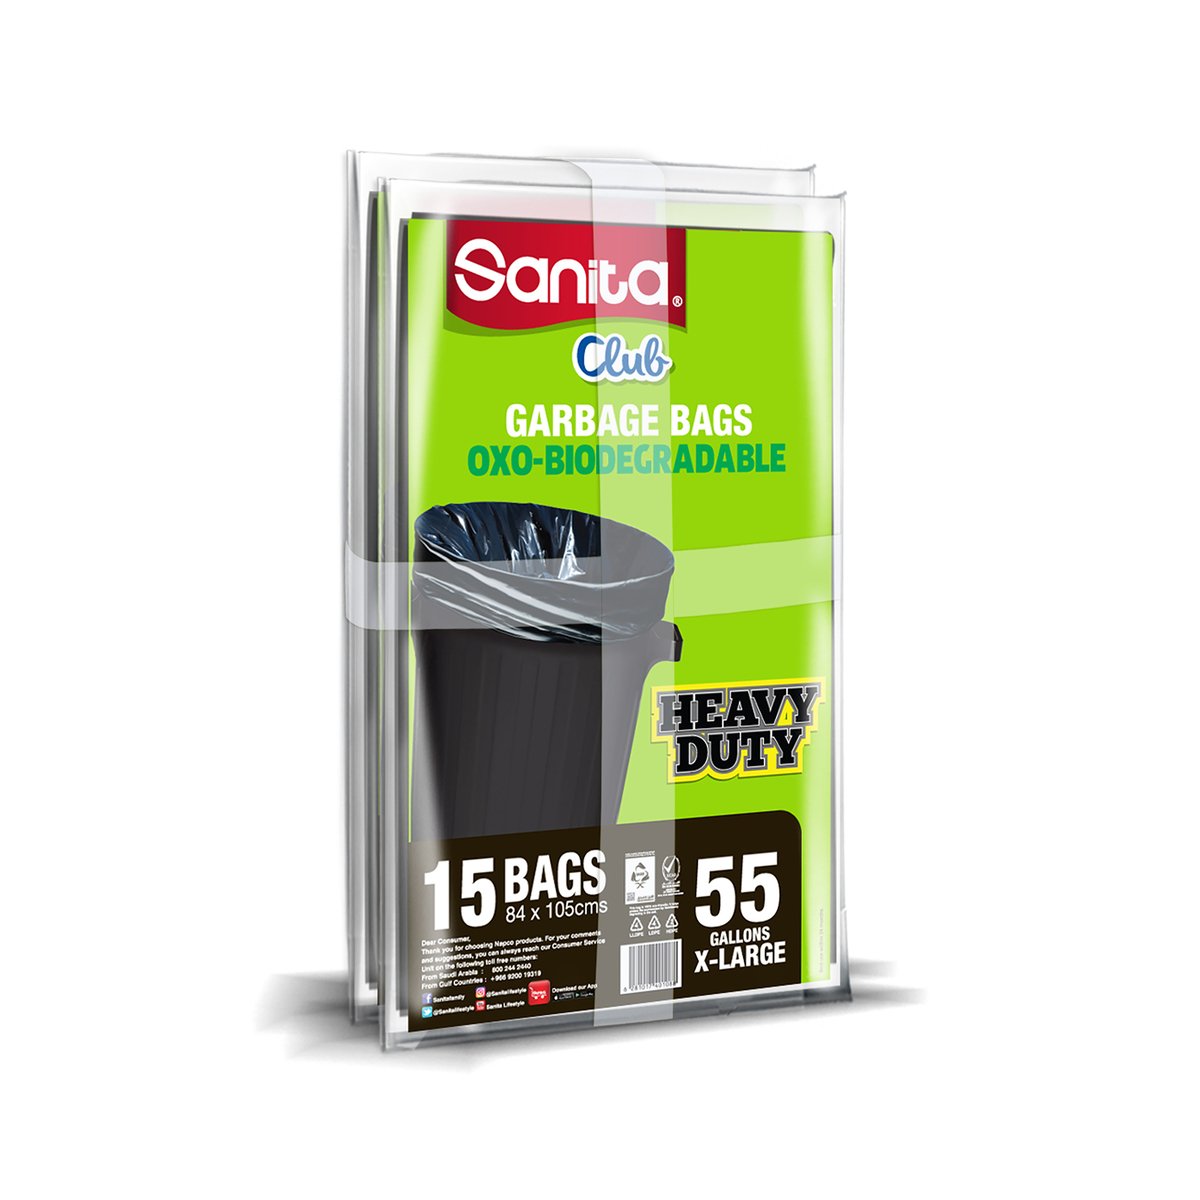 Sanita Club Garbage Bag Heavy Duty X- Large  55 Gallon Size 84 x 105cms 2 x 15 pcs